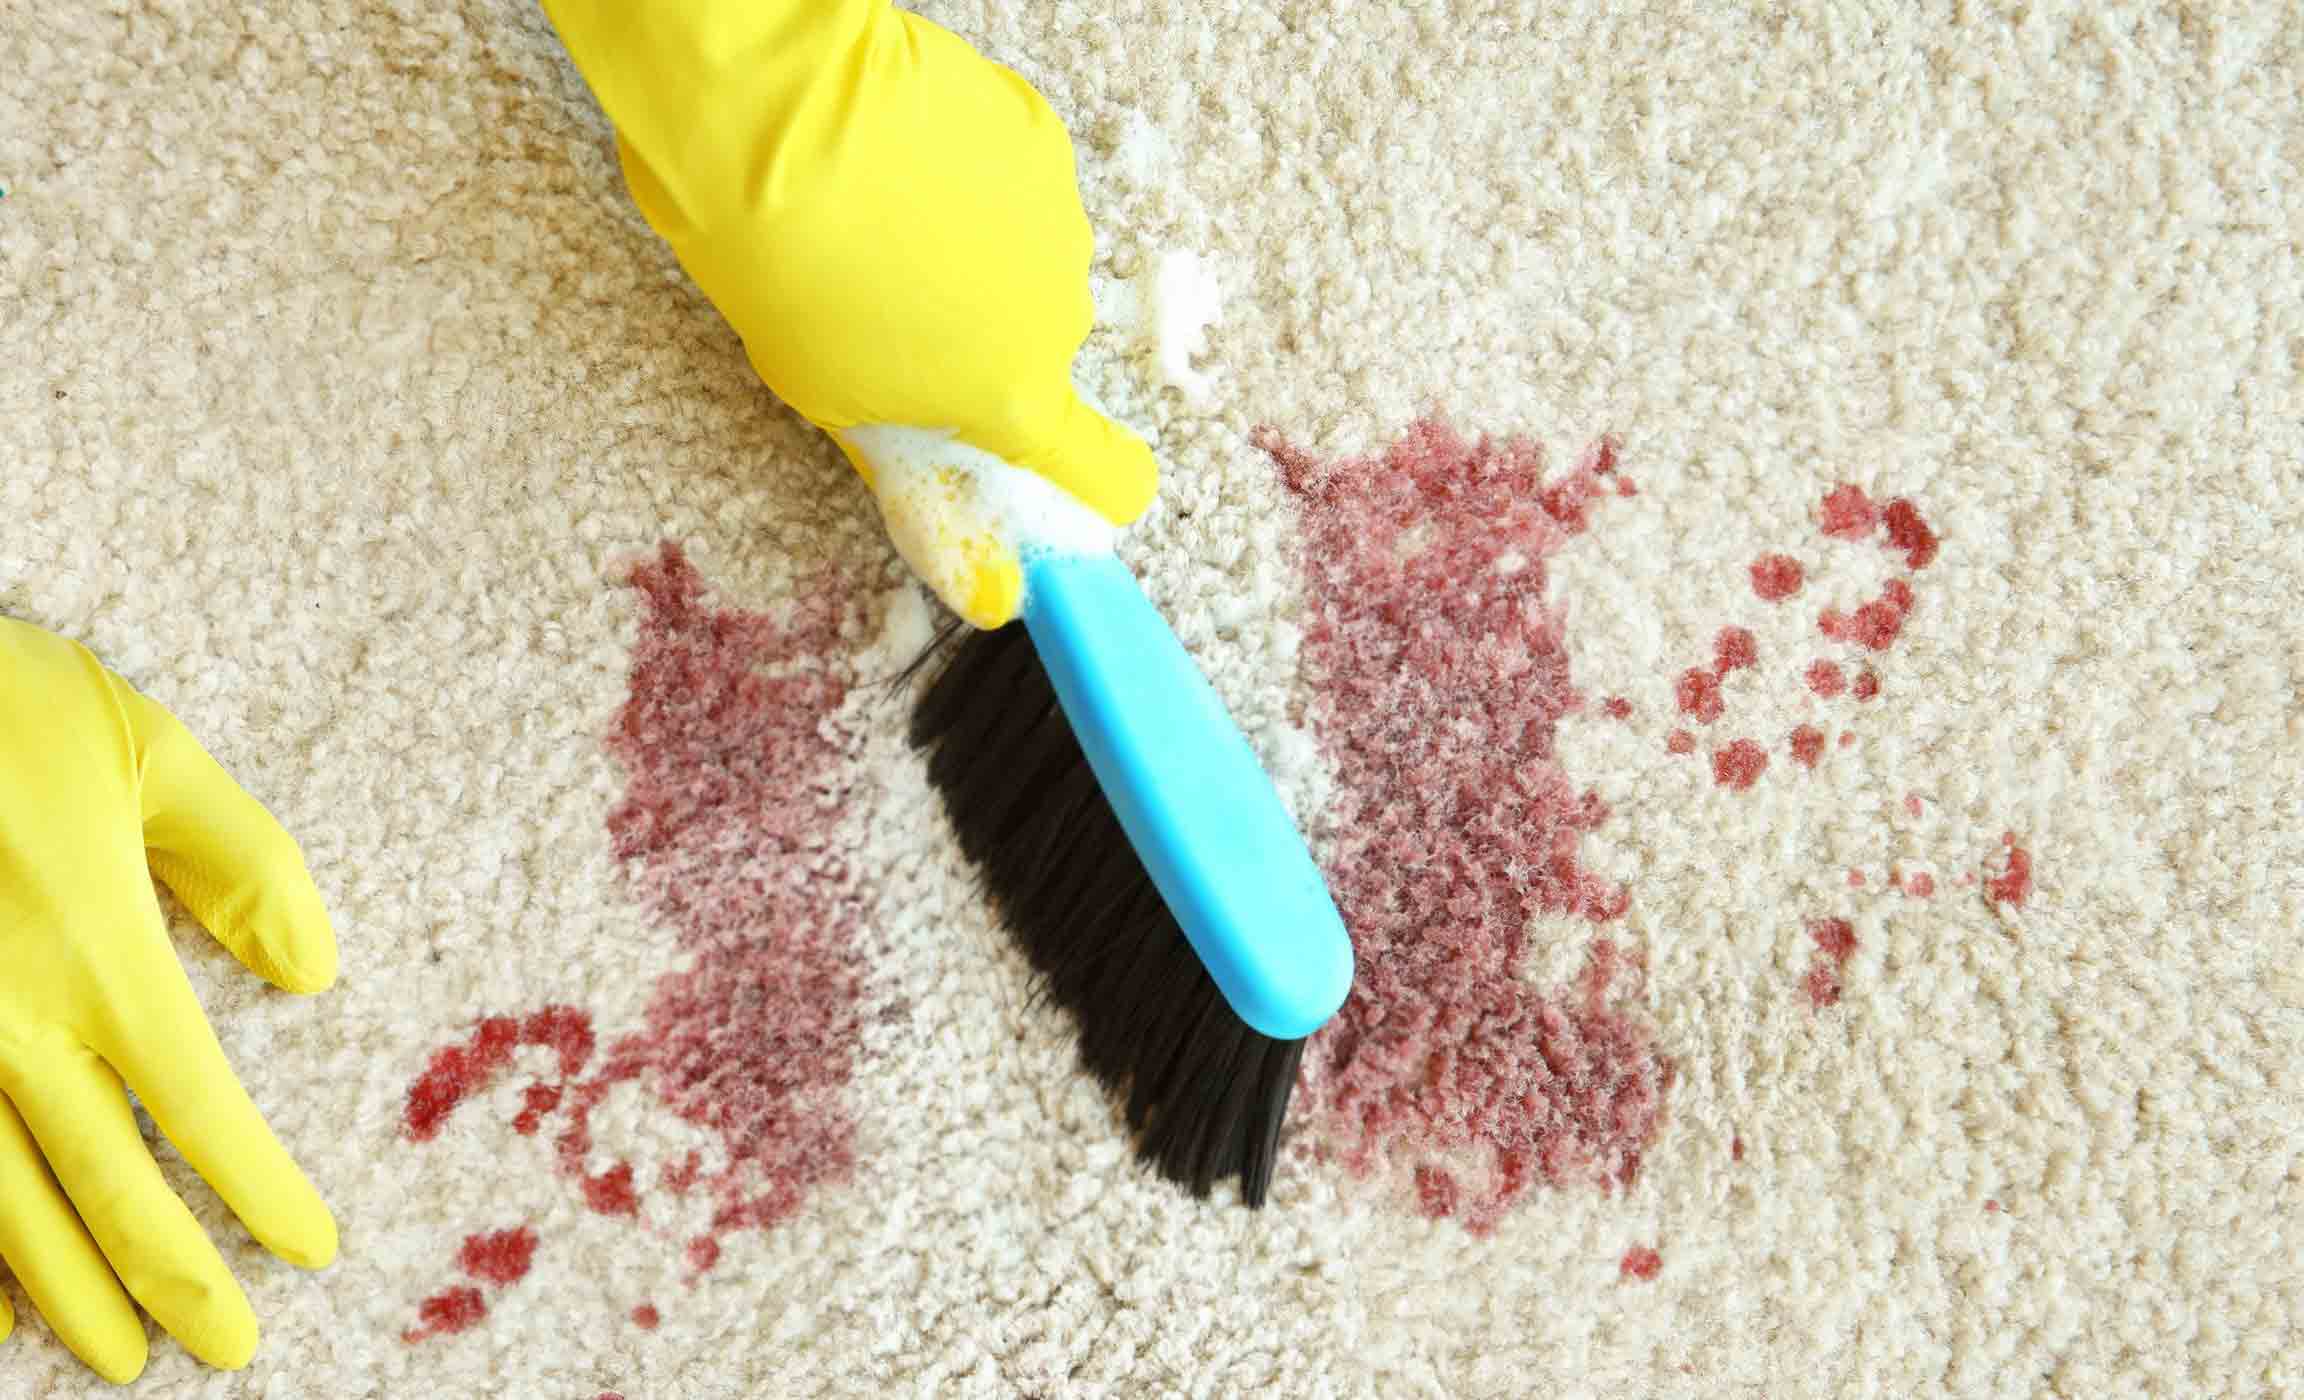 پاک کردن لکه خون از روی فرش در منزل - قالیشویی اوا